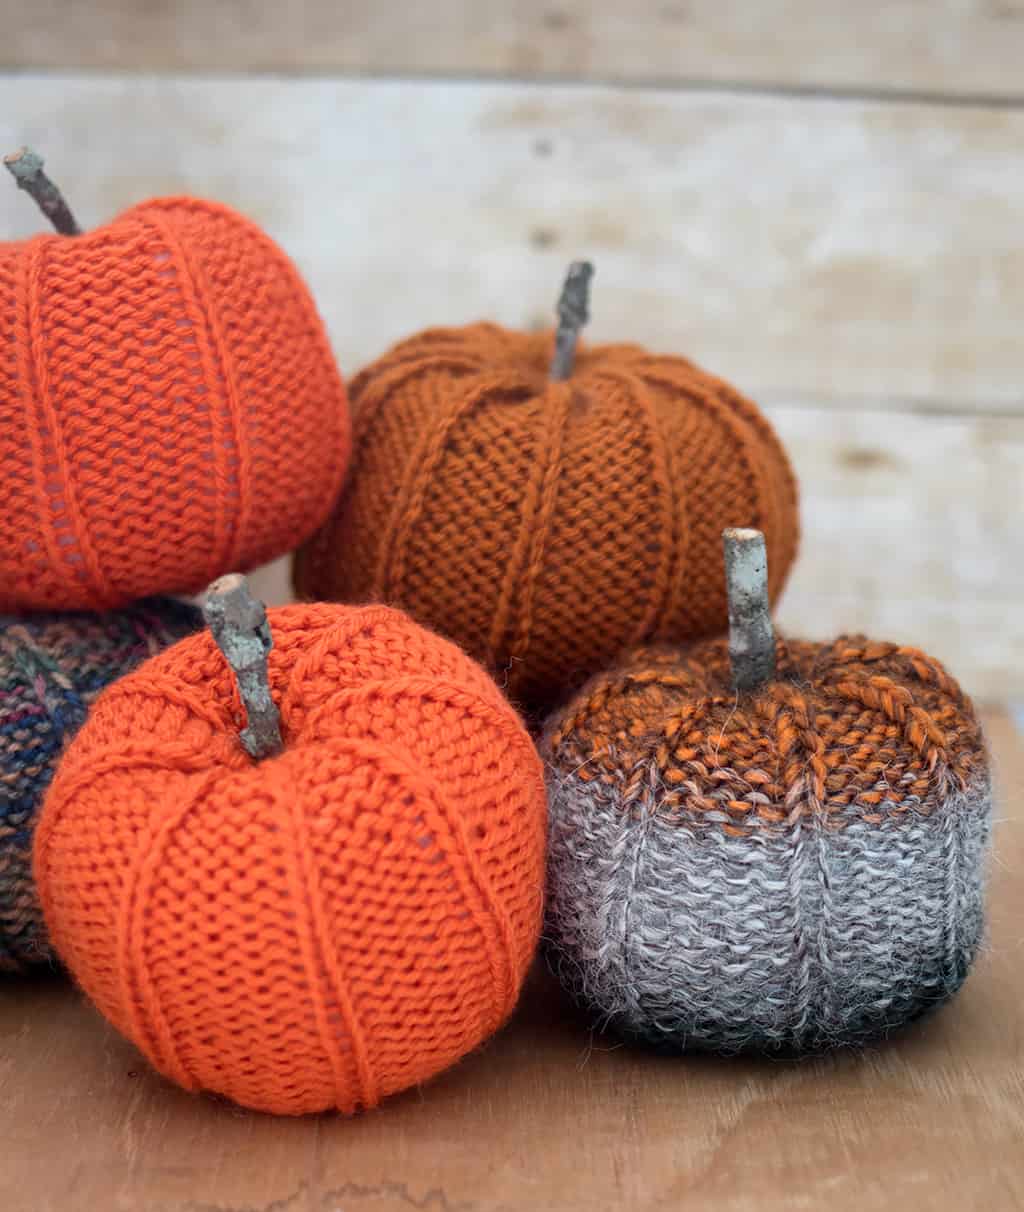 Pumpkin Knitting Pattern by Gina Michele